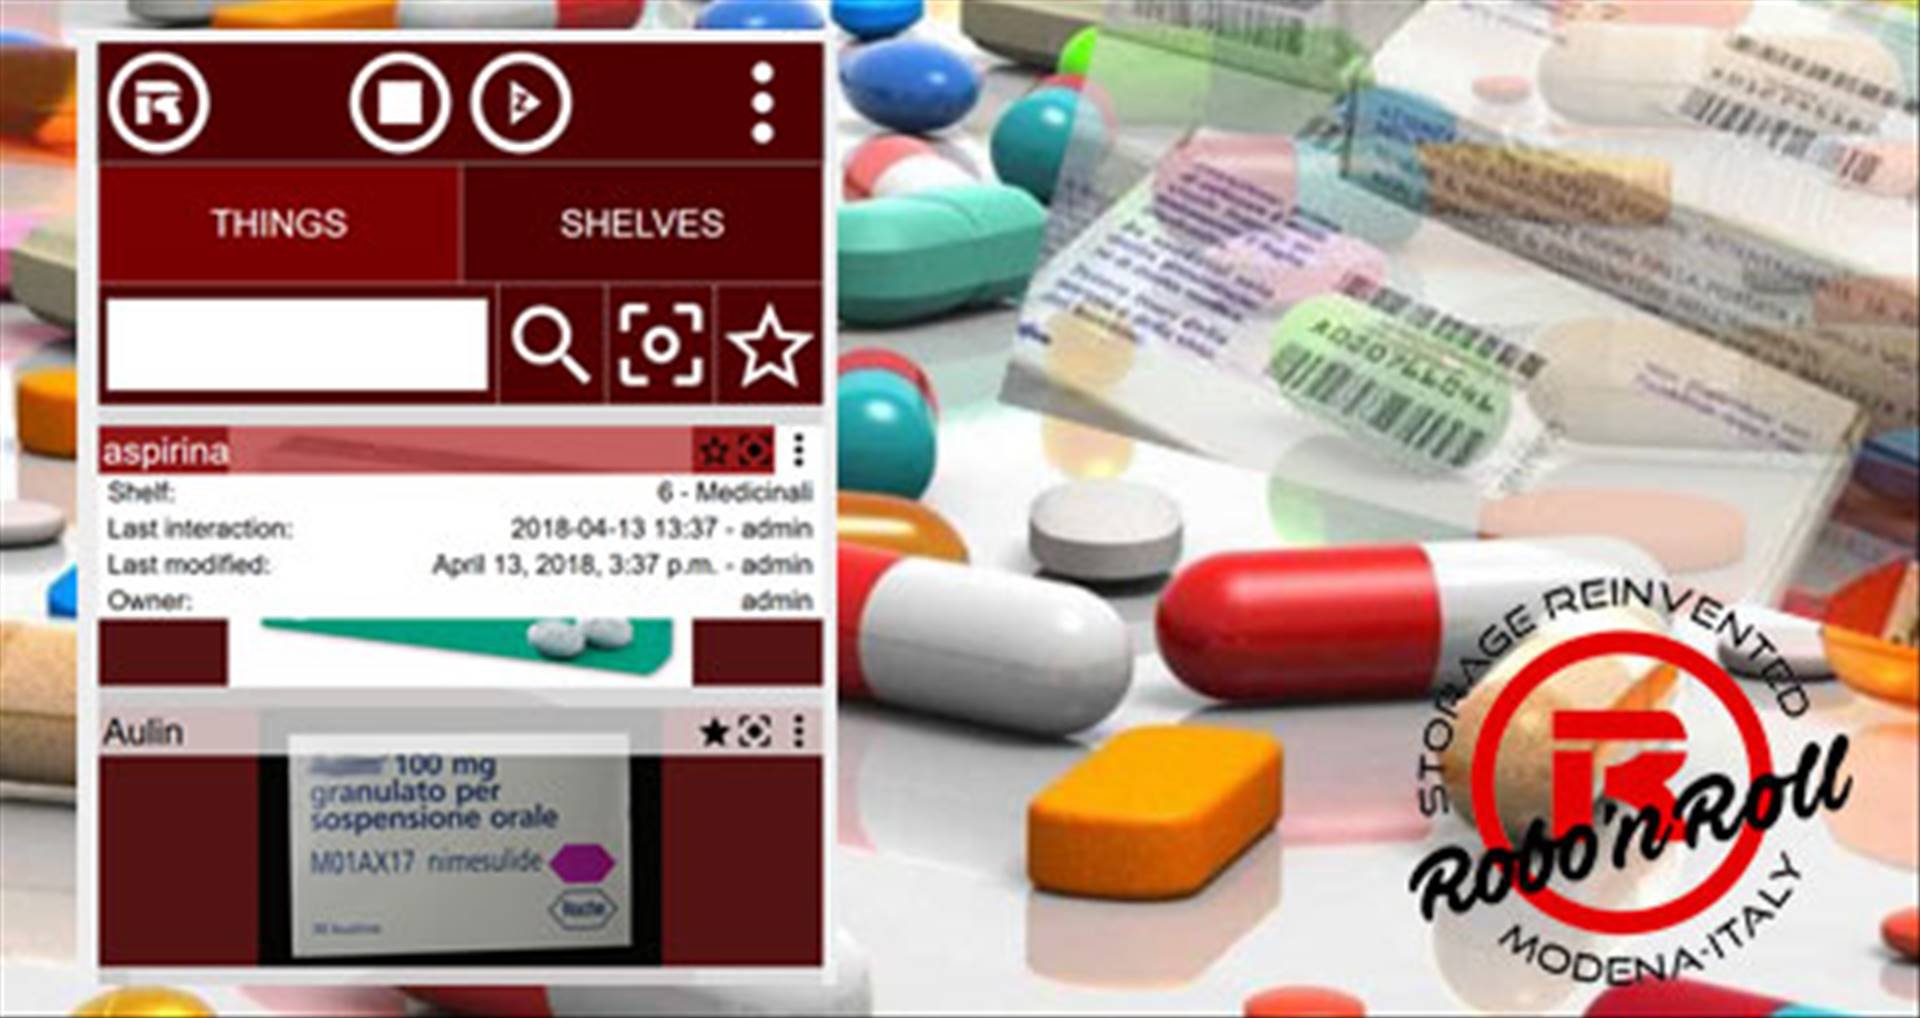 L'APPlicazione consente di catalogare ogni farmaco: data di scadenza, principio attivo, fascia di prezzo.